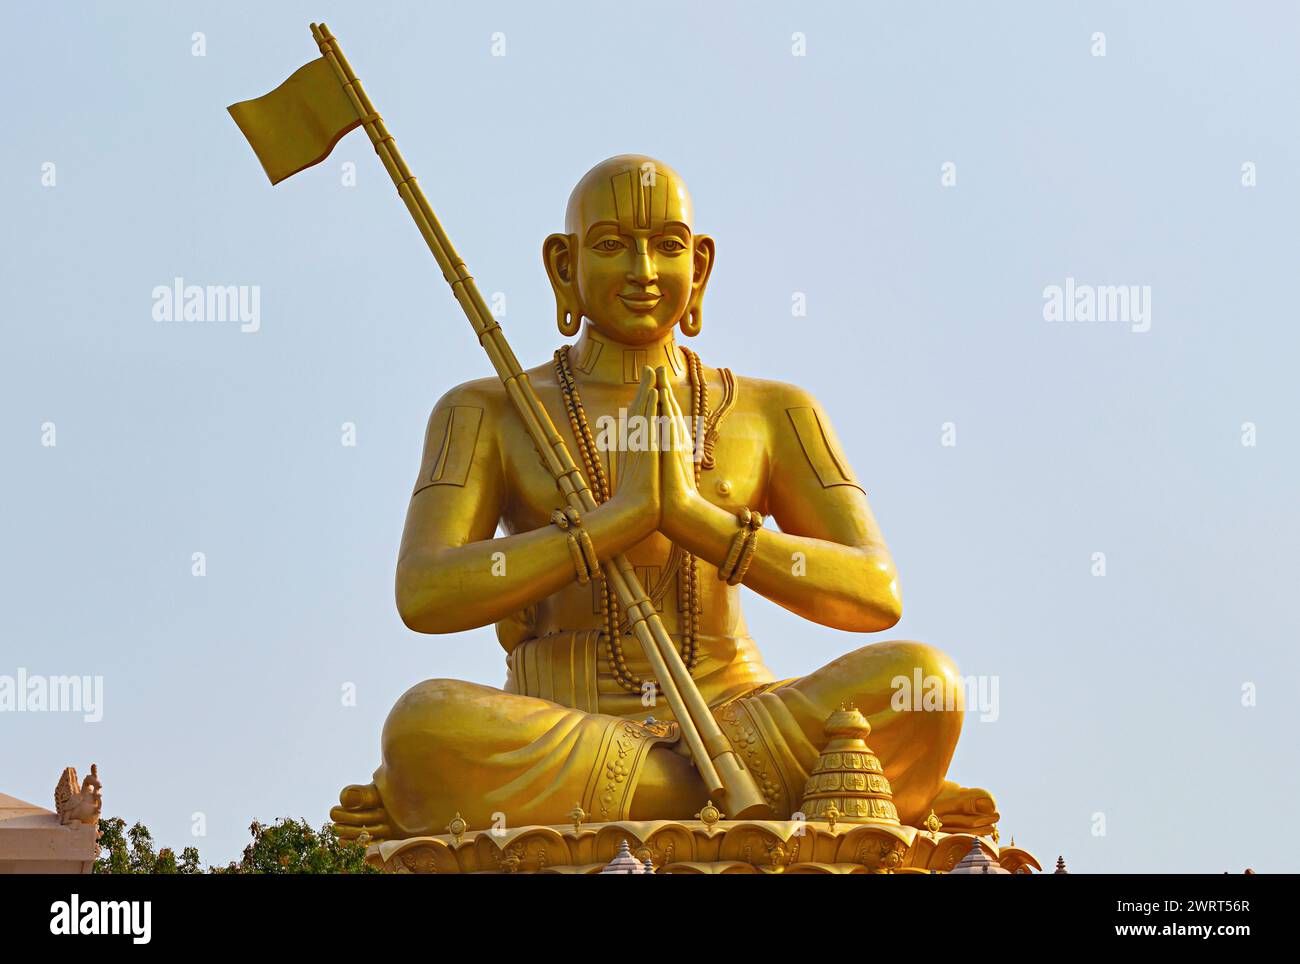 Statue de l'égalité, statue de Ramanujacharya, philosophe indien du XIe siècle, inaugurée en 2022, Muchintal, Hyderabad, Inde. Banque D'Images